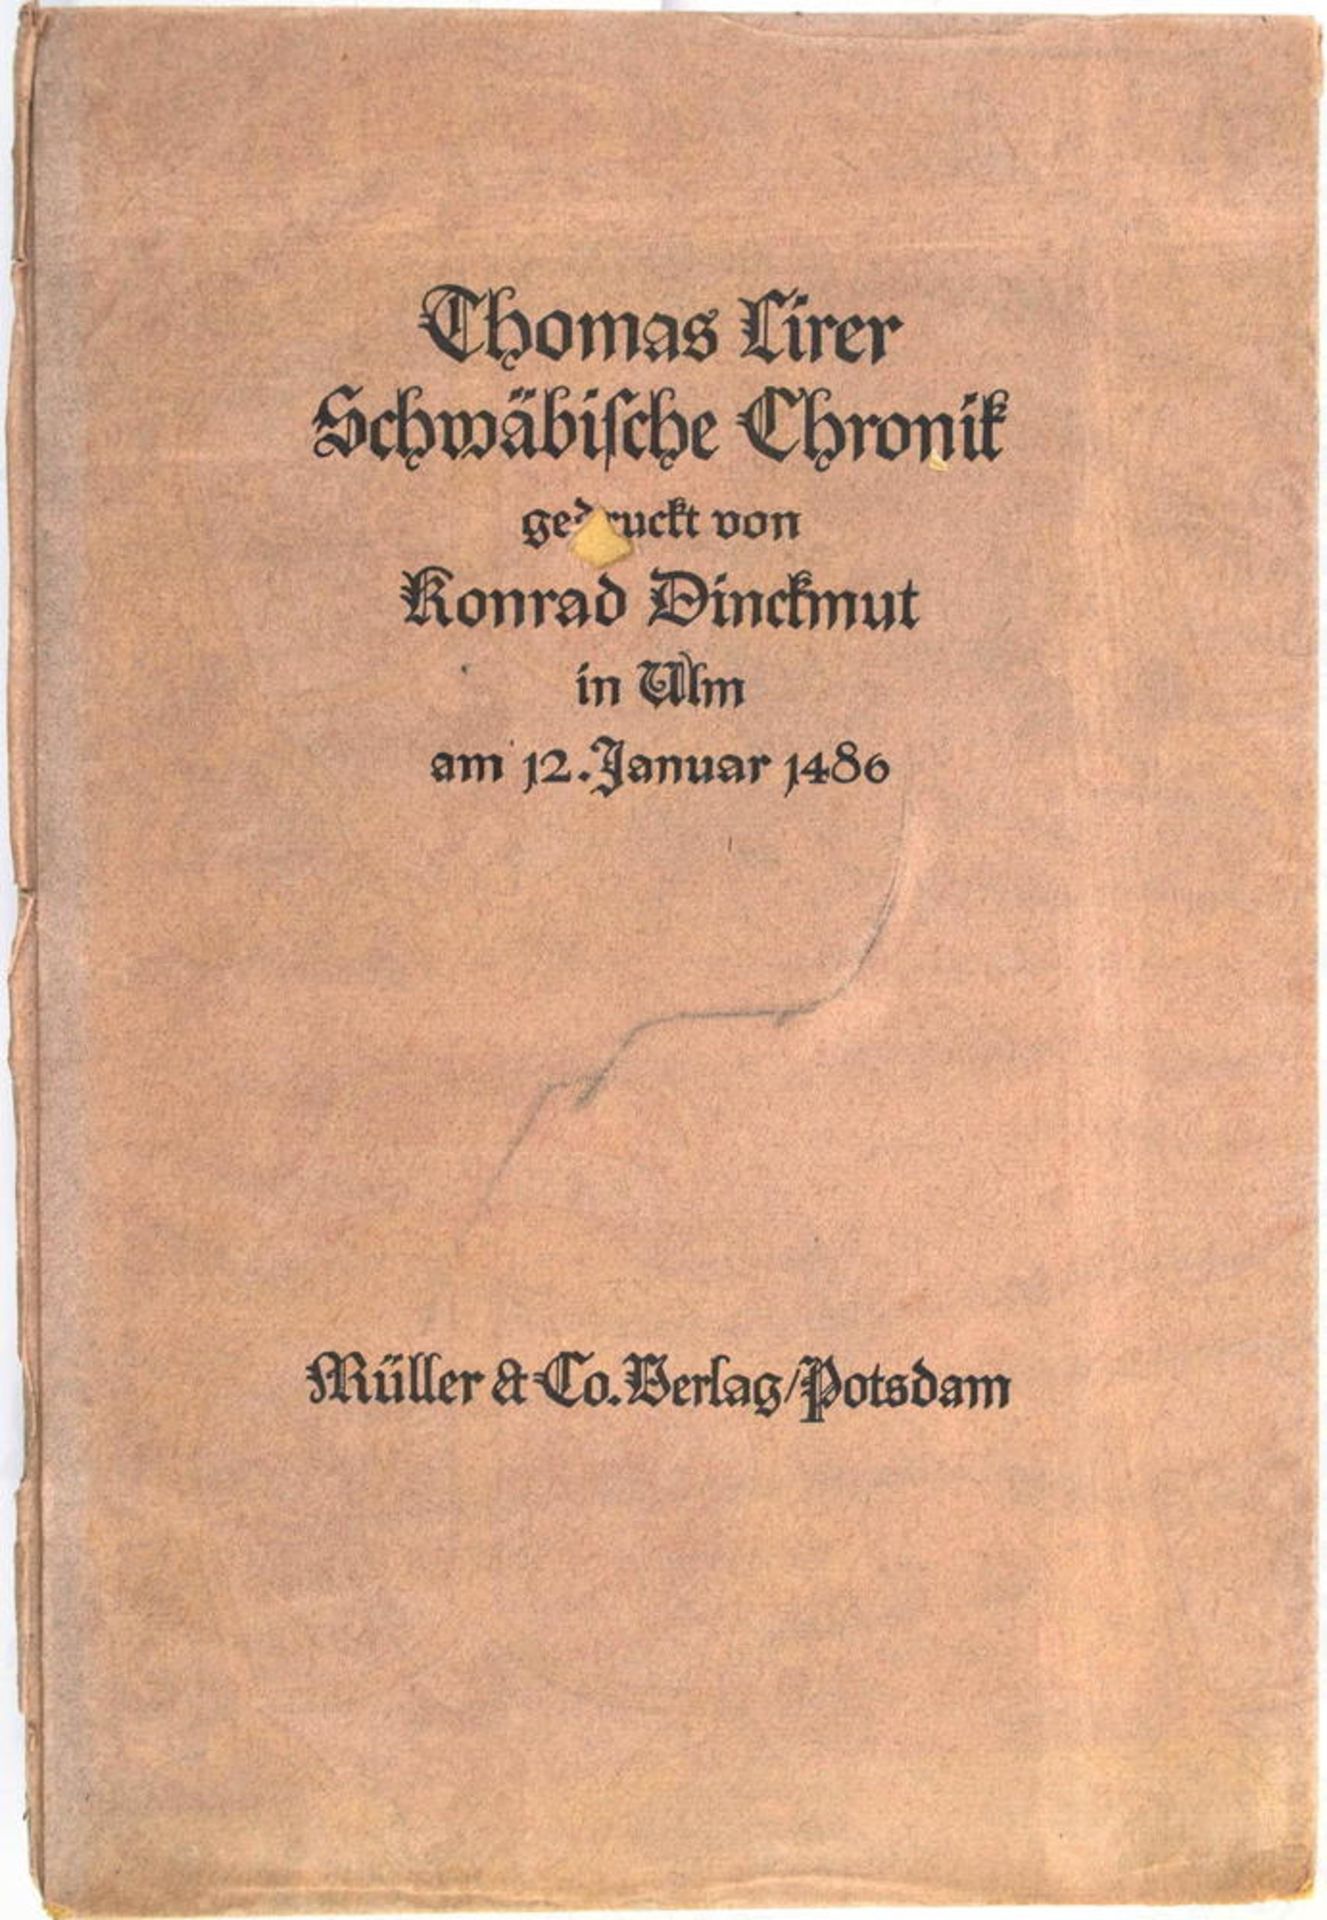 THOMAS LIRER SCHWÄBISCHE CHRONIK, „gedruckt von Konrad Dinchmut in Ulm am 12.1.1486“, Nachdruck